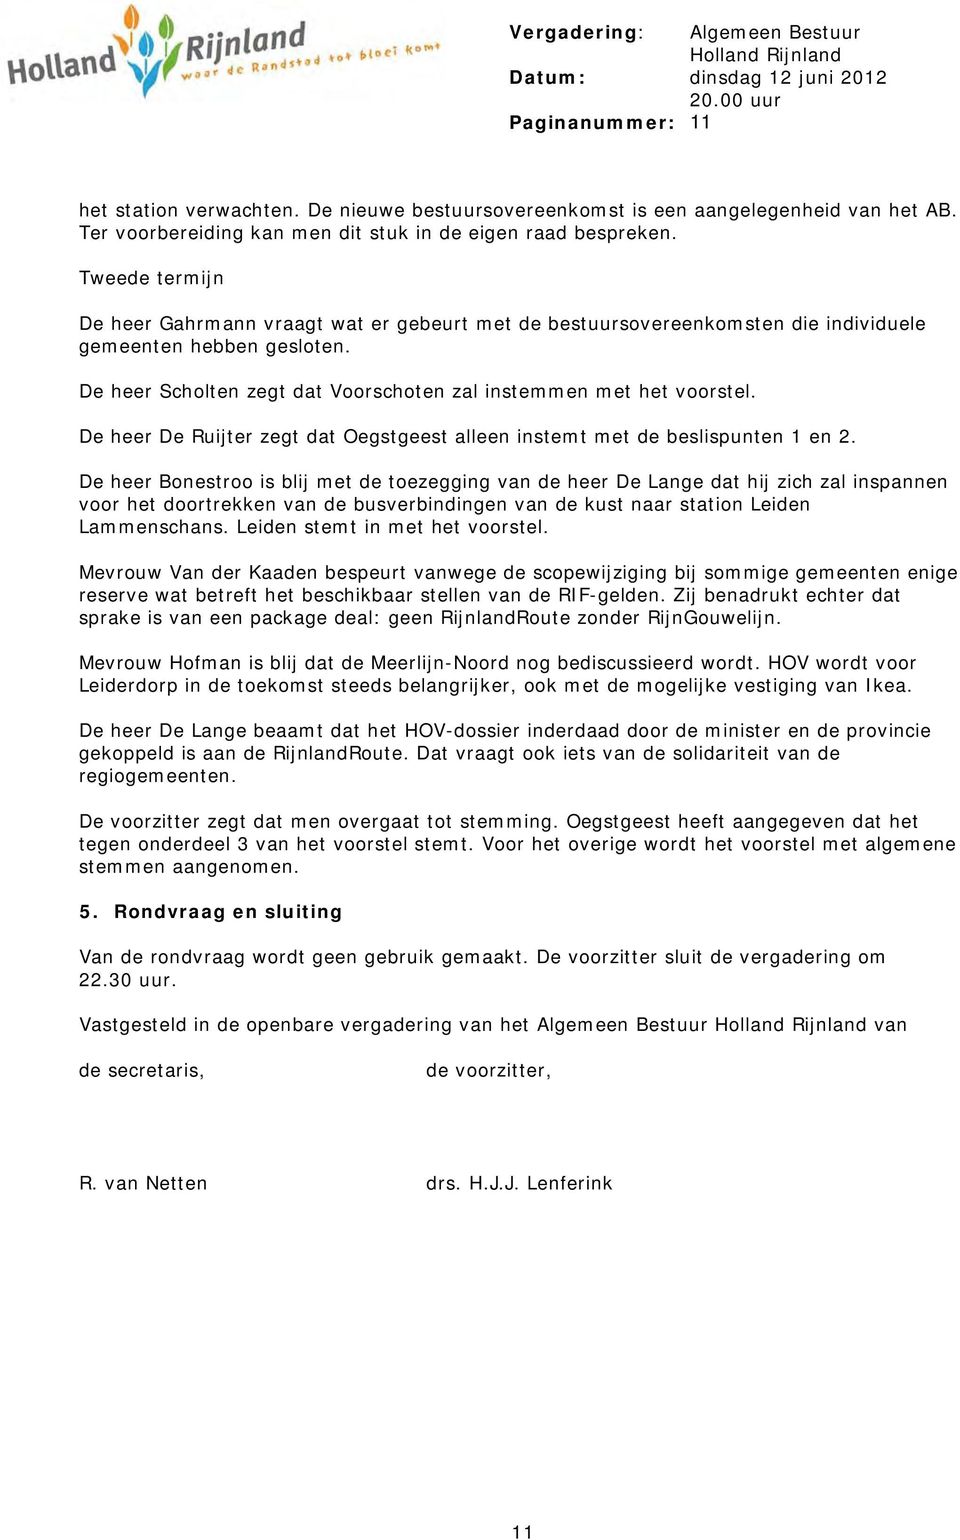 De heer Scholten zegt dat Voorschoten zal instemmen met het voorstel. De heer De Ruijter zegt dat Oegstgeest alleen instemt met de beslispunten 1 en 2.